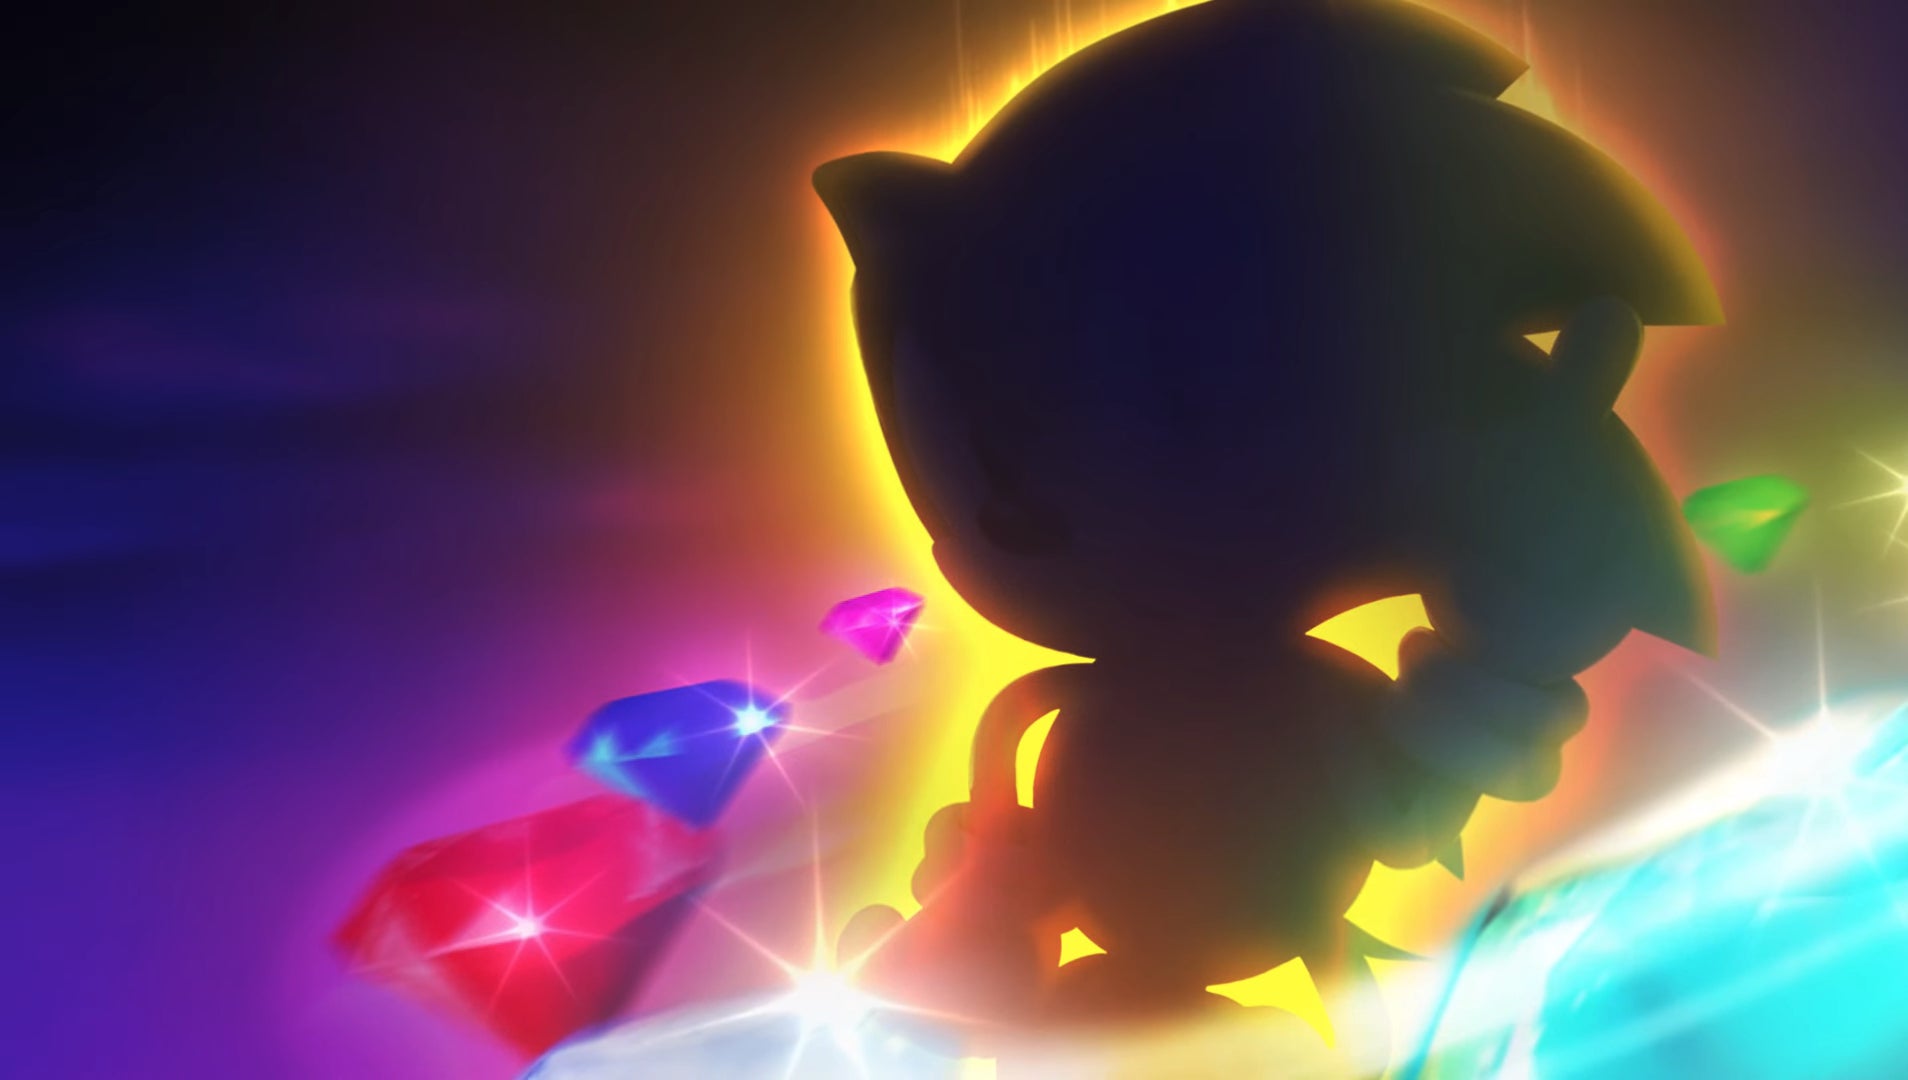 Sonic viene visto avvolto nell'oscurità e circondato dai Chaos Emerald.